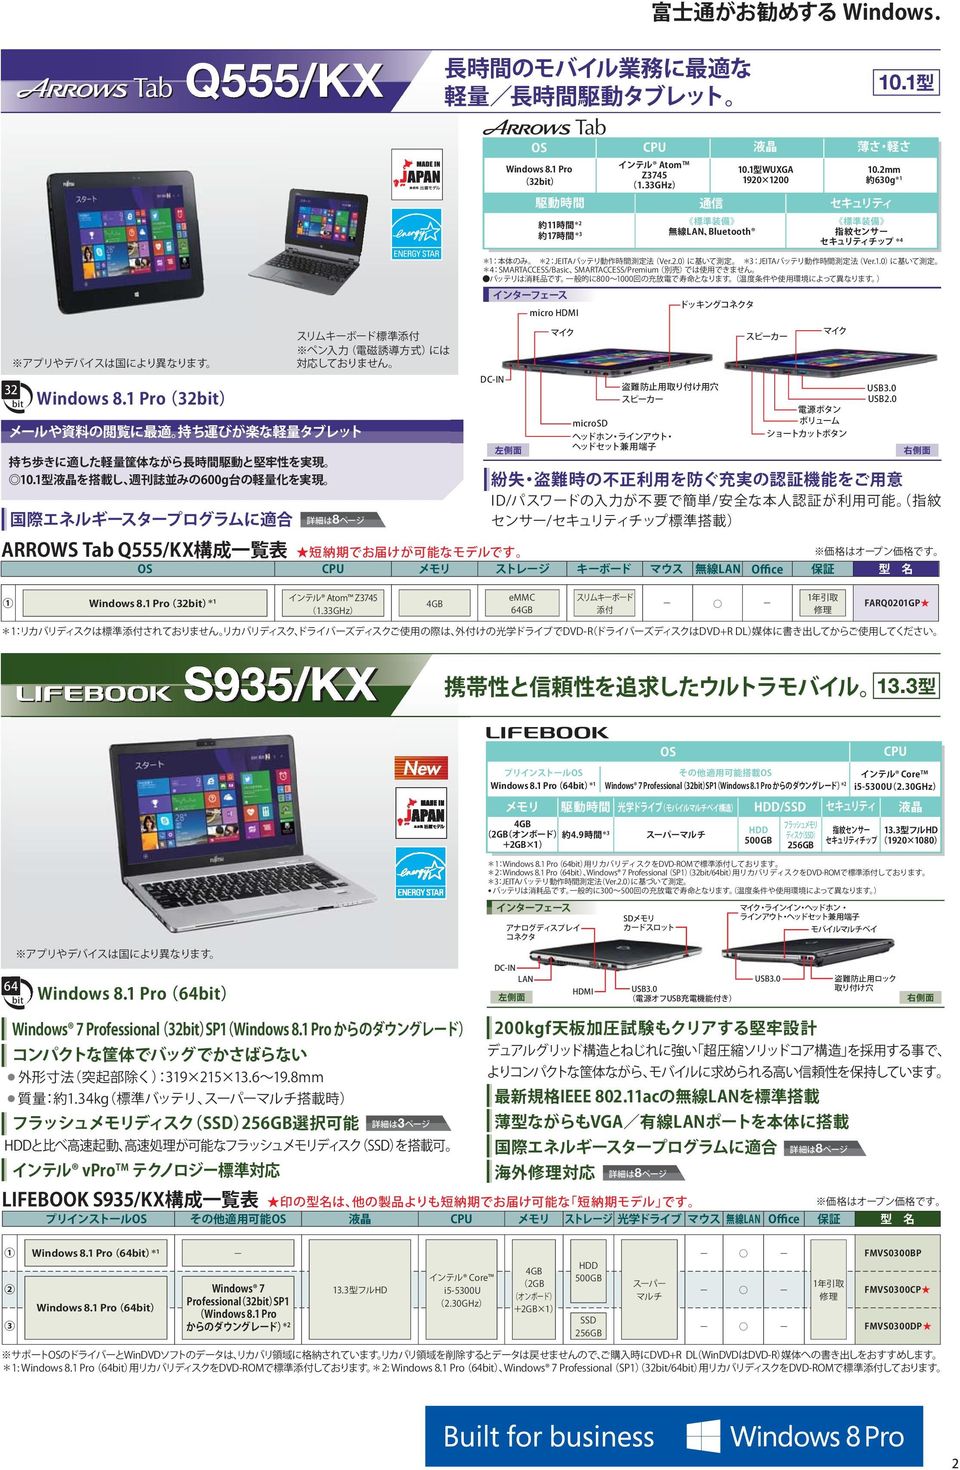 S935/KX